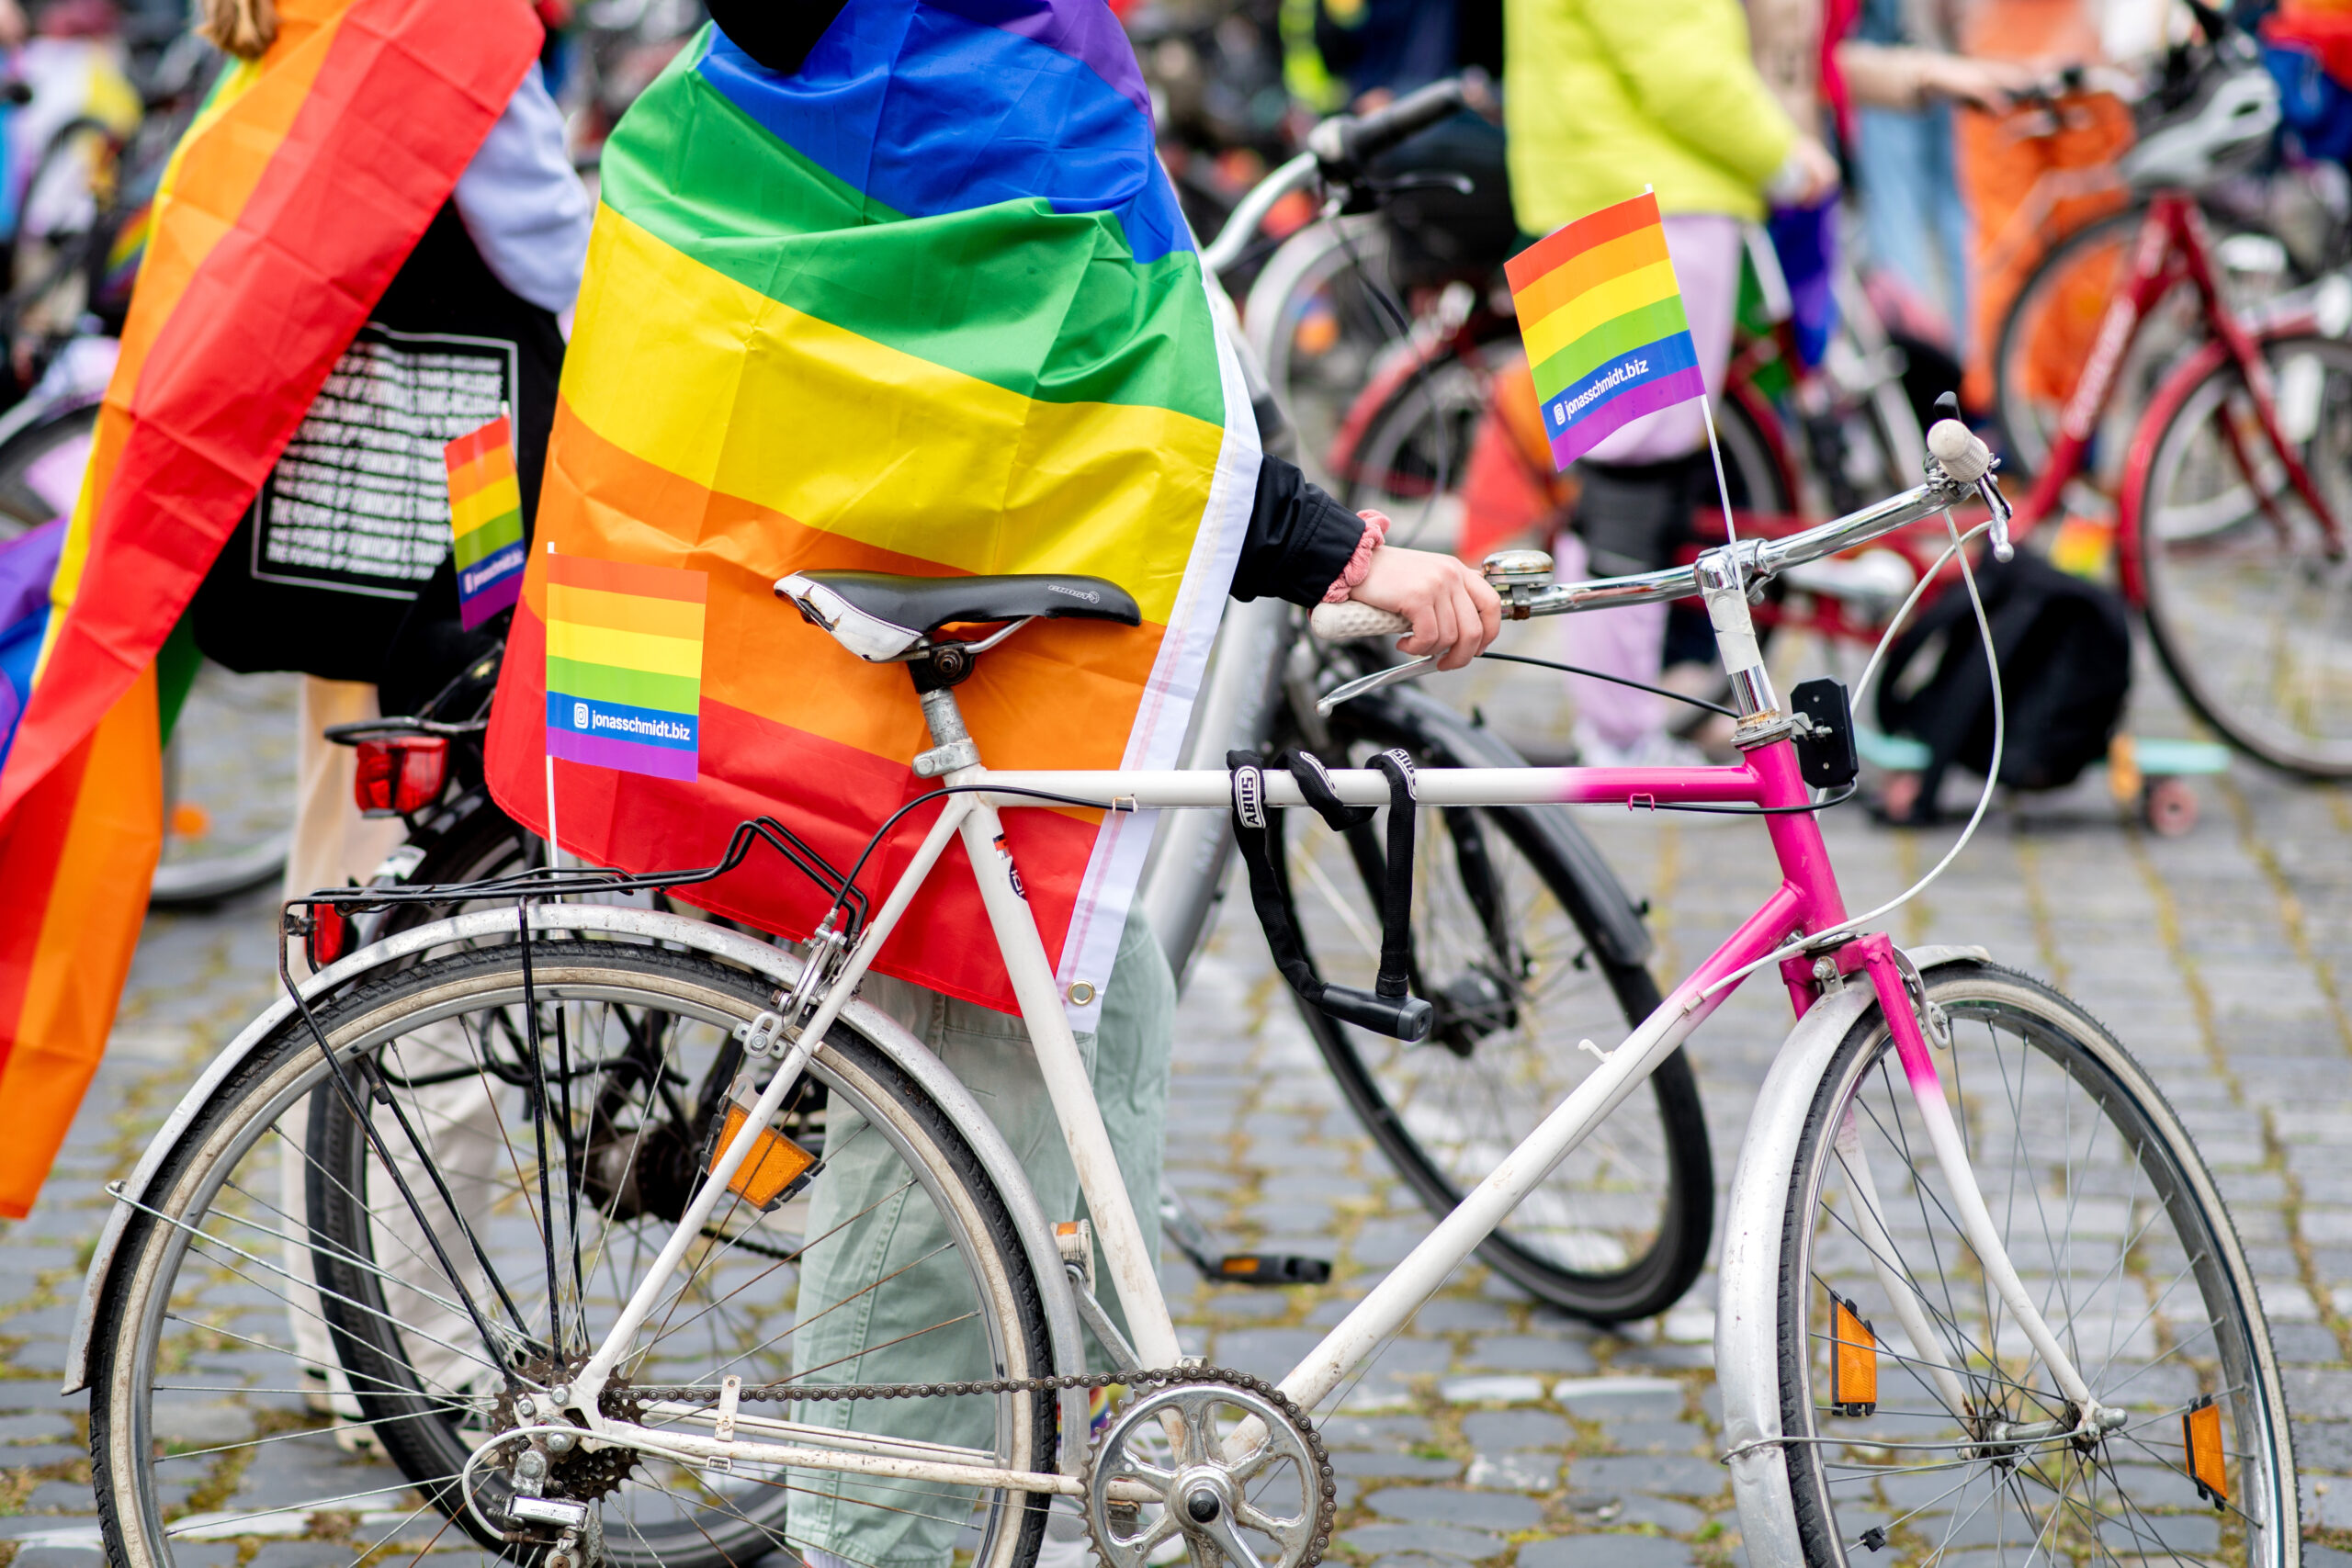 Nach dem Besuch des Christopher Street Days (CSD) am Samstag sind zwei Menschen in Hannover queerfeindlich beleidigt und verletzt worden (Archivbild).